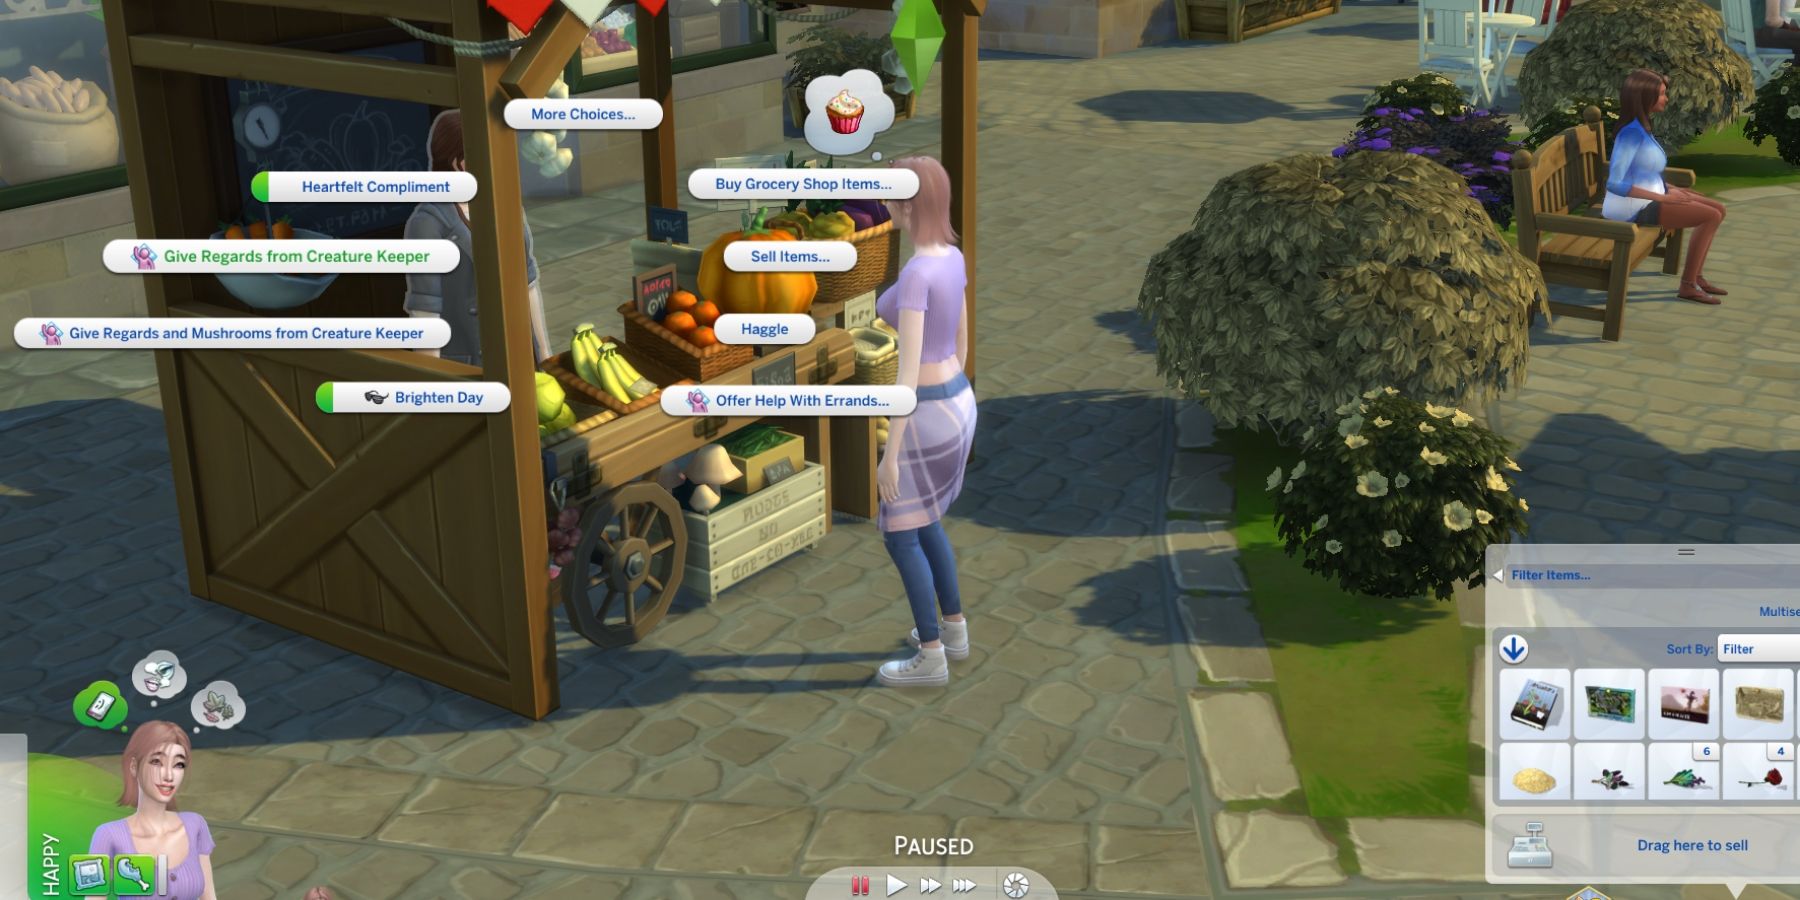 изображение на обложке для того, как помочь соседям и получить поручения в Sims 4